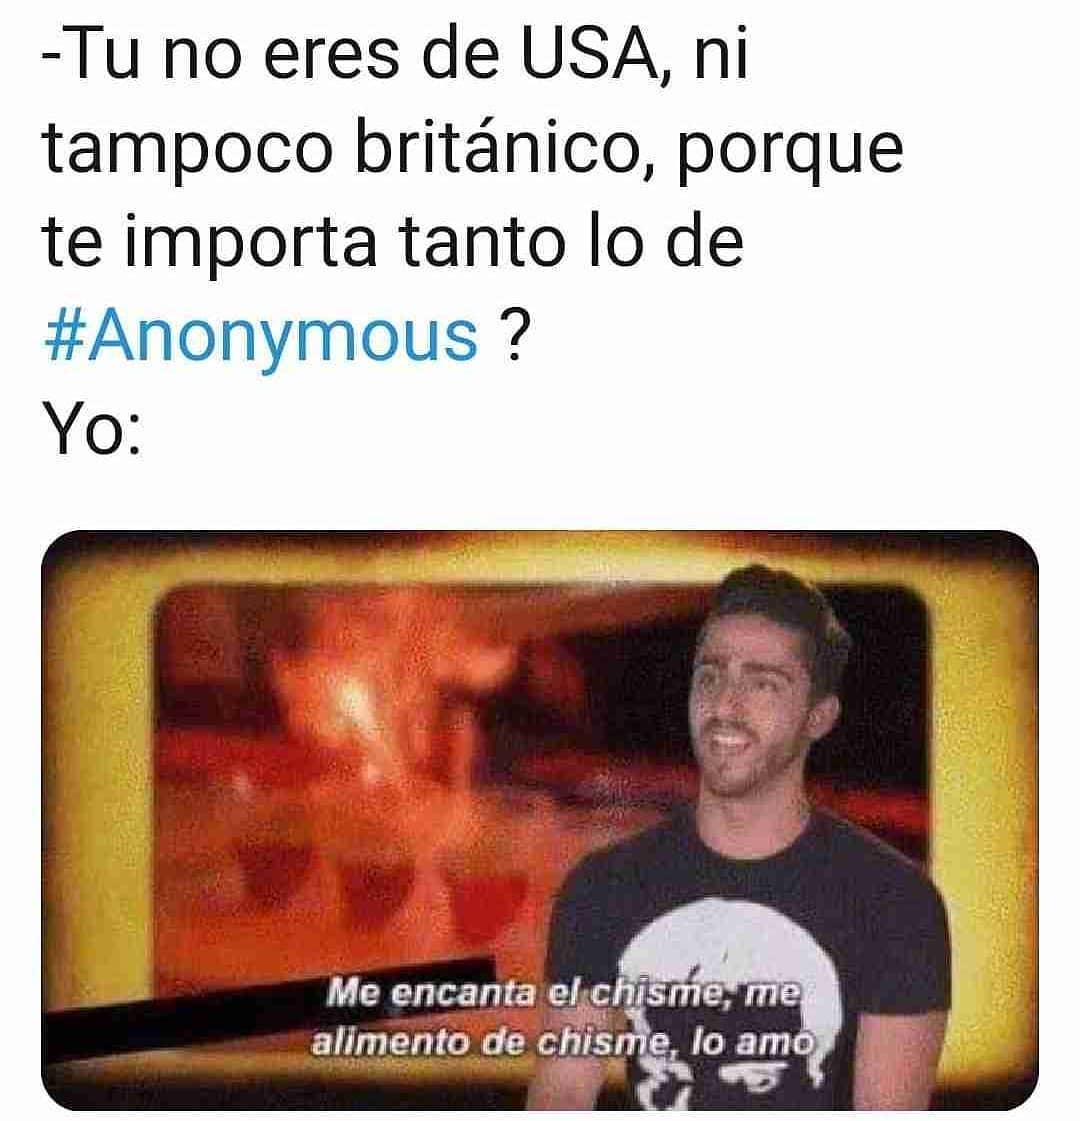 Tu no eres de USA, ni tampoco británico, porque te importa tanto lo de #Anonymous?  Yo: Me encanta el chisme, me alimento de chisme, lo amo.